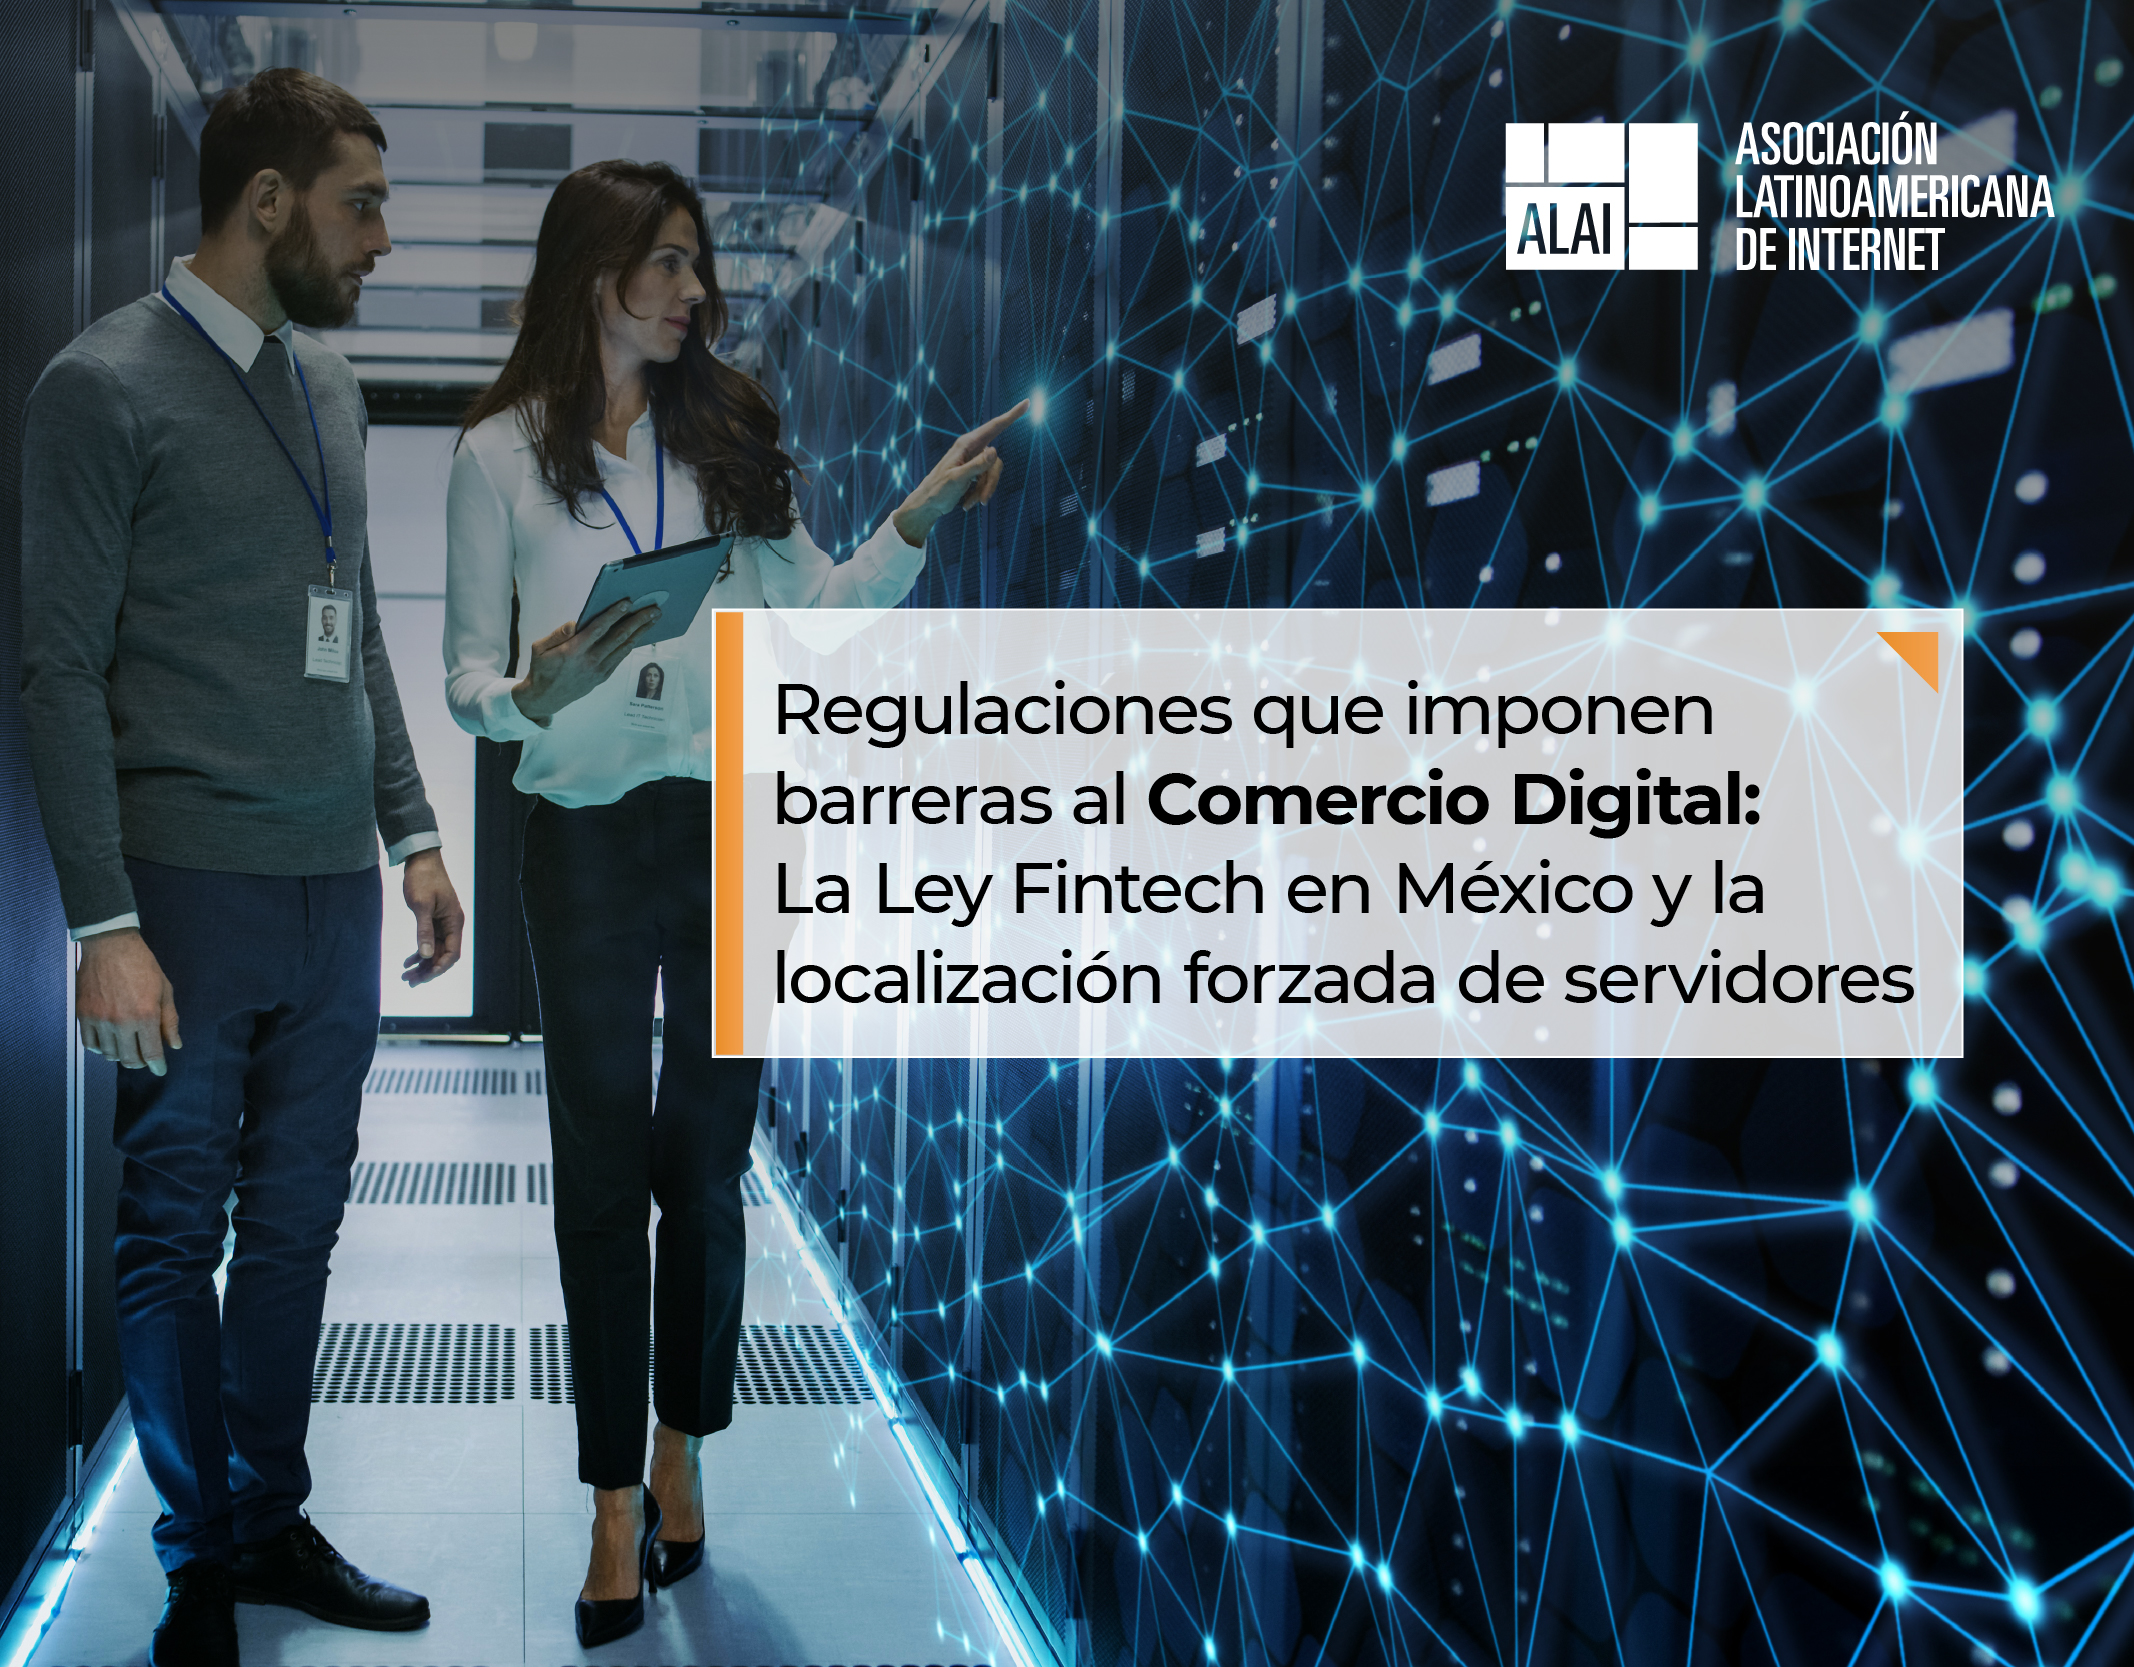 Regulaciones que imponen barreras al Comercio Digital: La Ley Fintech en México y la localización forzada de servidores